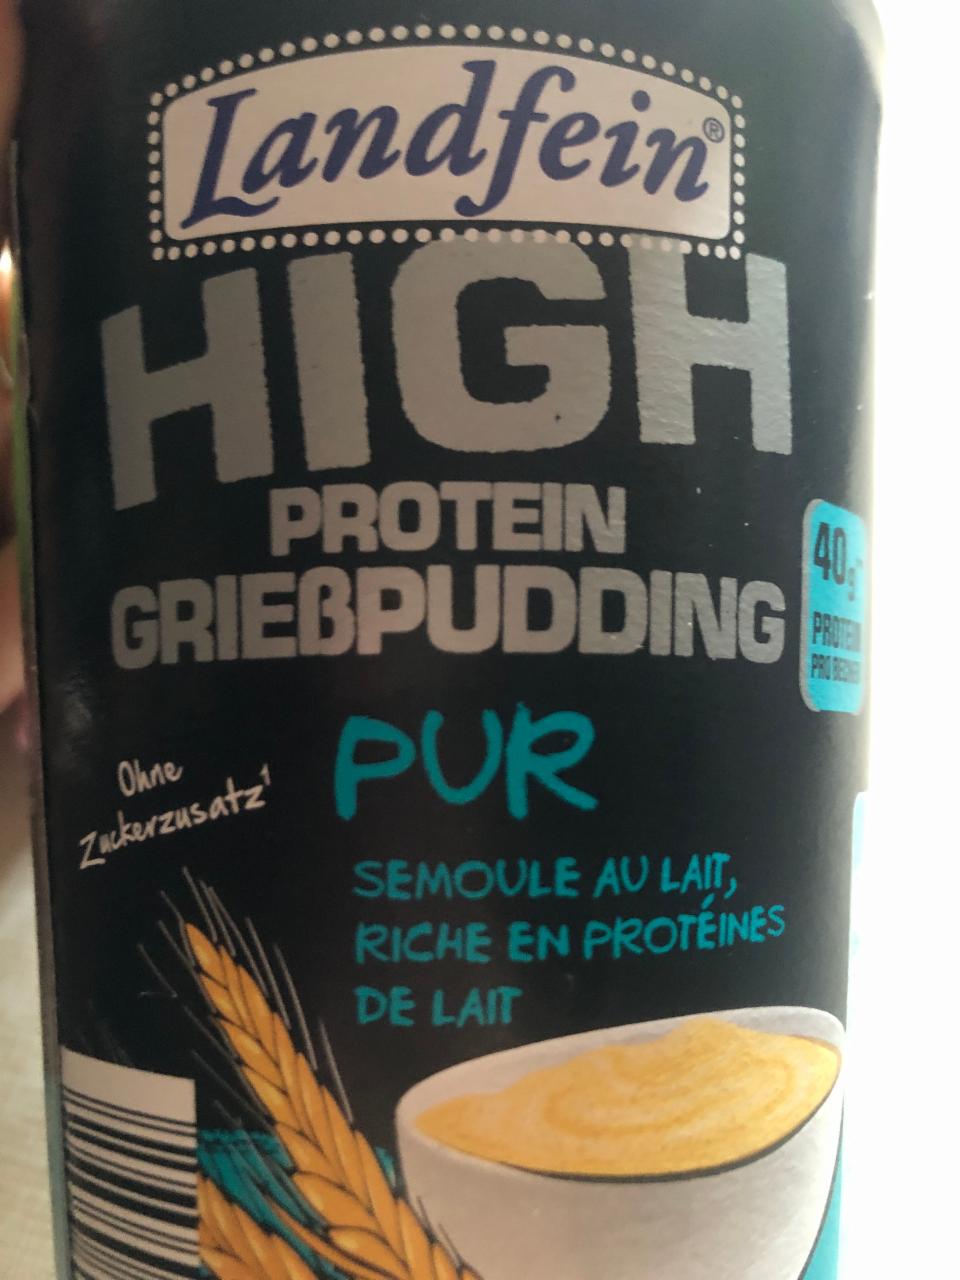 Fotografie - High protein Griesspudding pur Landfein